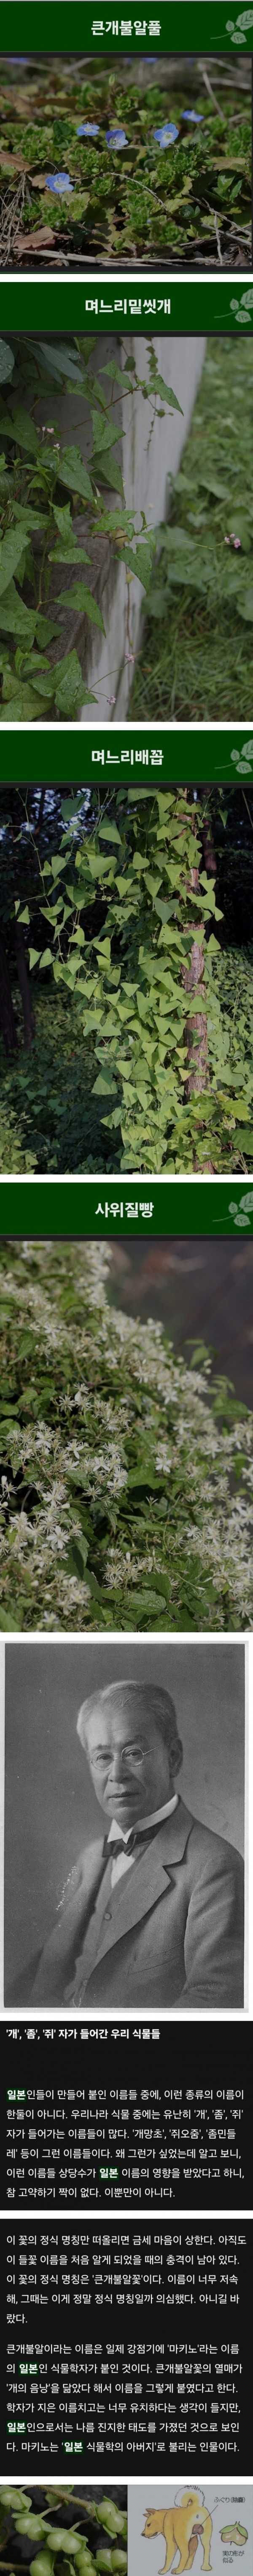 한국 식물들 중 천박한 이름이 많은 이유